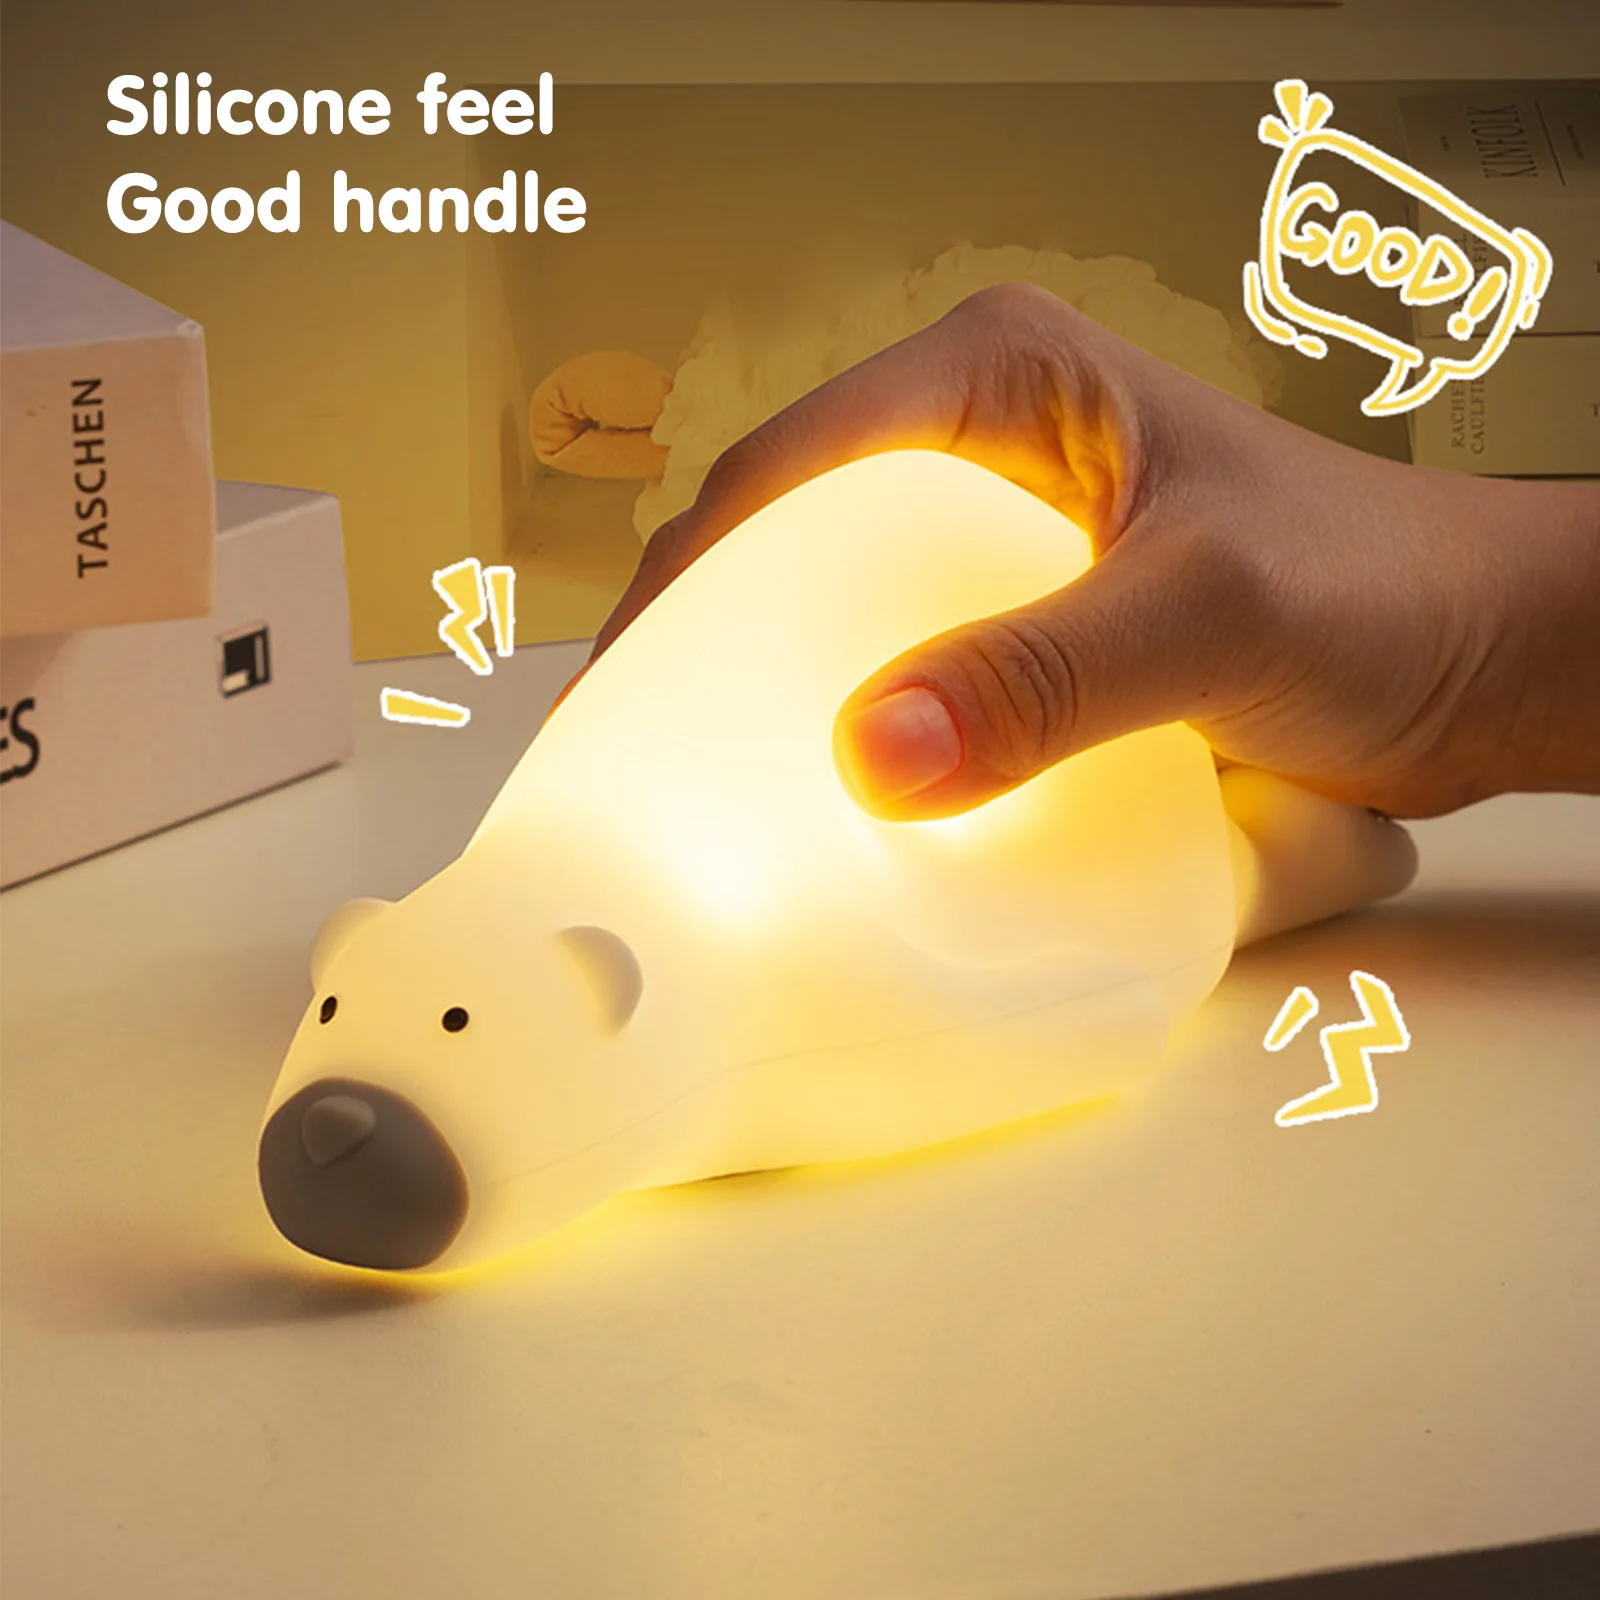 

Силиконовая детская лампа для сна, 3-скоростной яркий USB-медведь, декоративная лампа, водонепроницаемые мягкие милые игрушки, подарки на день рождения, День святого Валентина